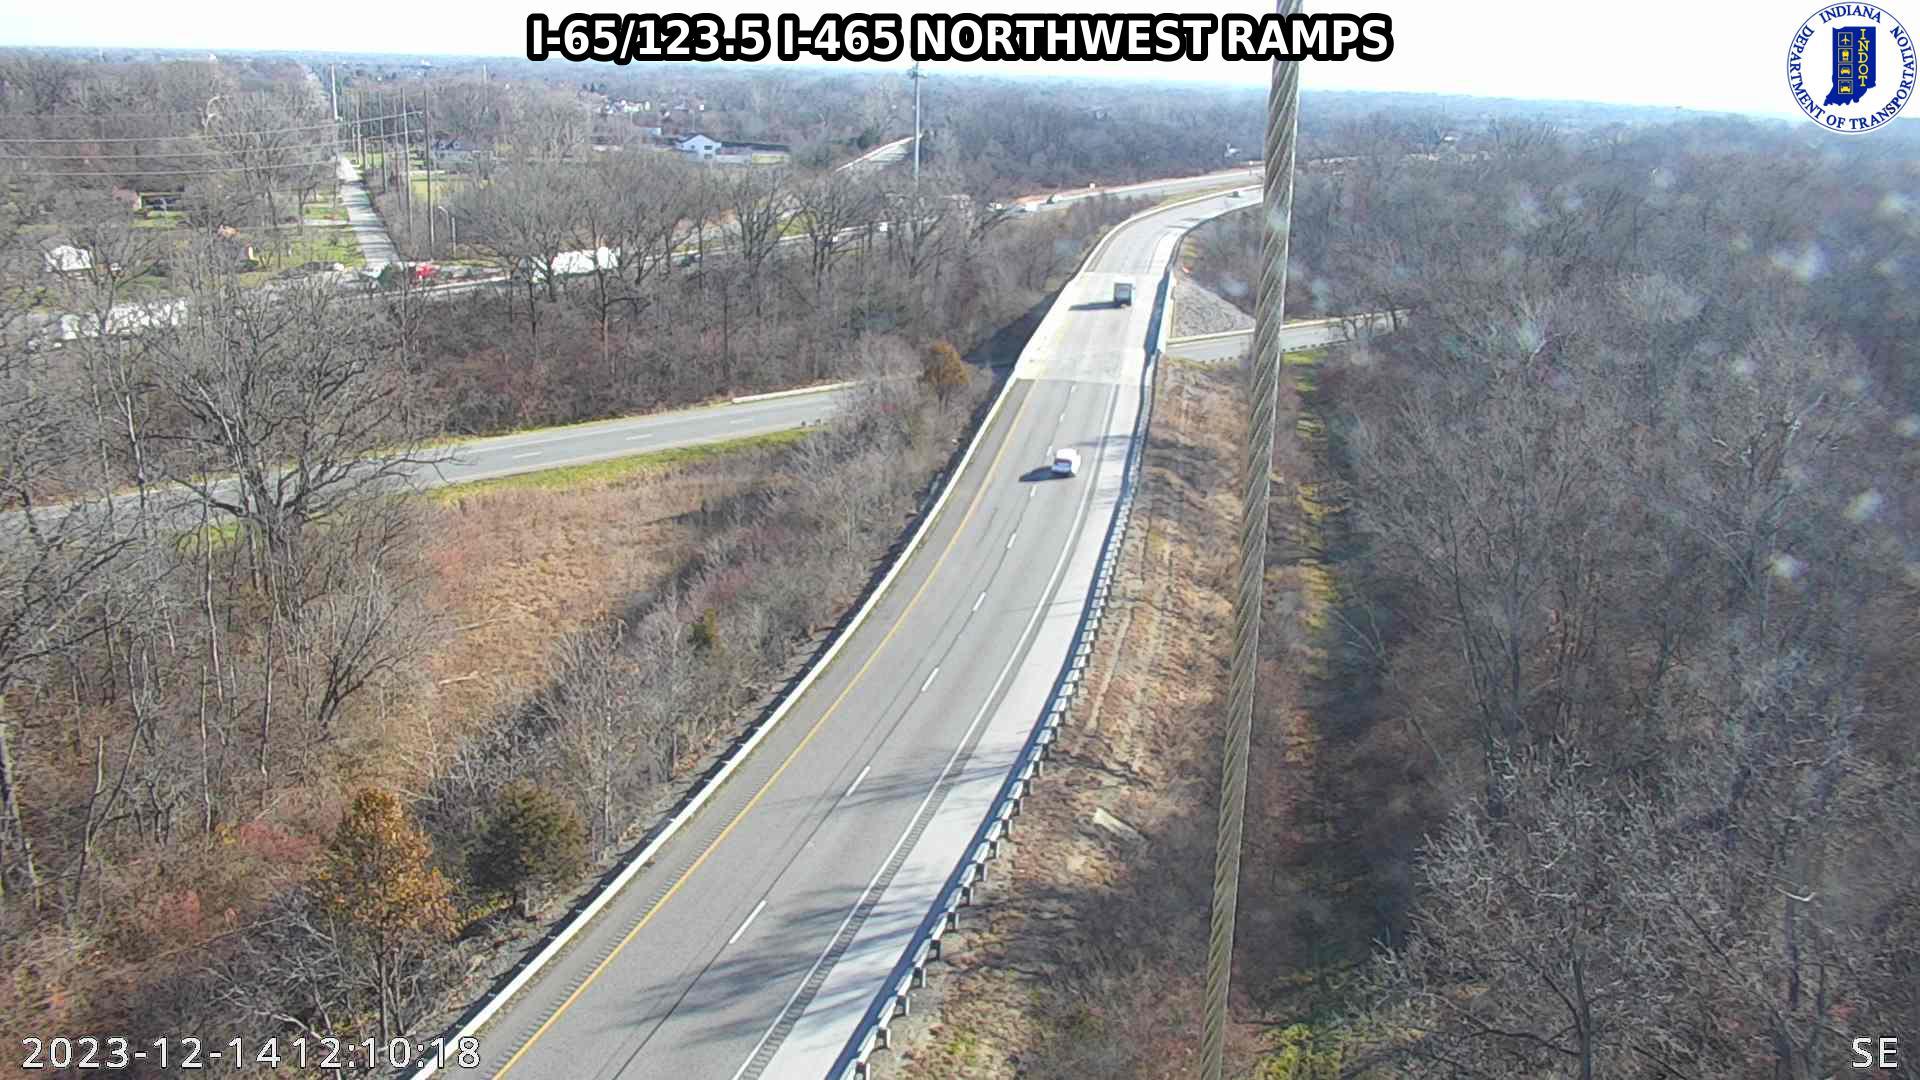 Traffic Cam Indianapolis: I-65: I-65/123.5 I-465 NORTHWEST RAMPS : I-65/123.5 I-465 NORTHWEST RAMPS Player